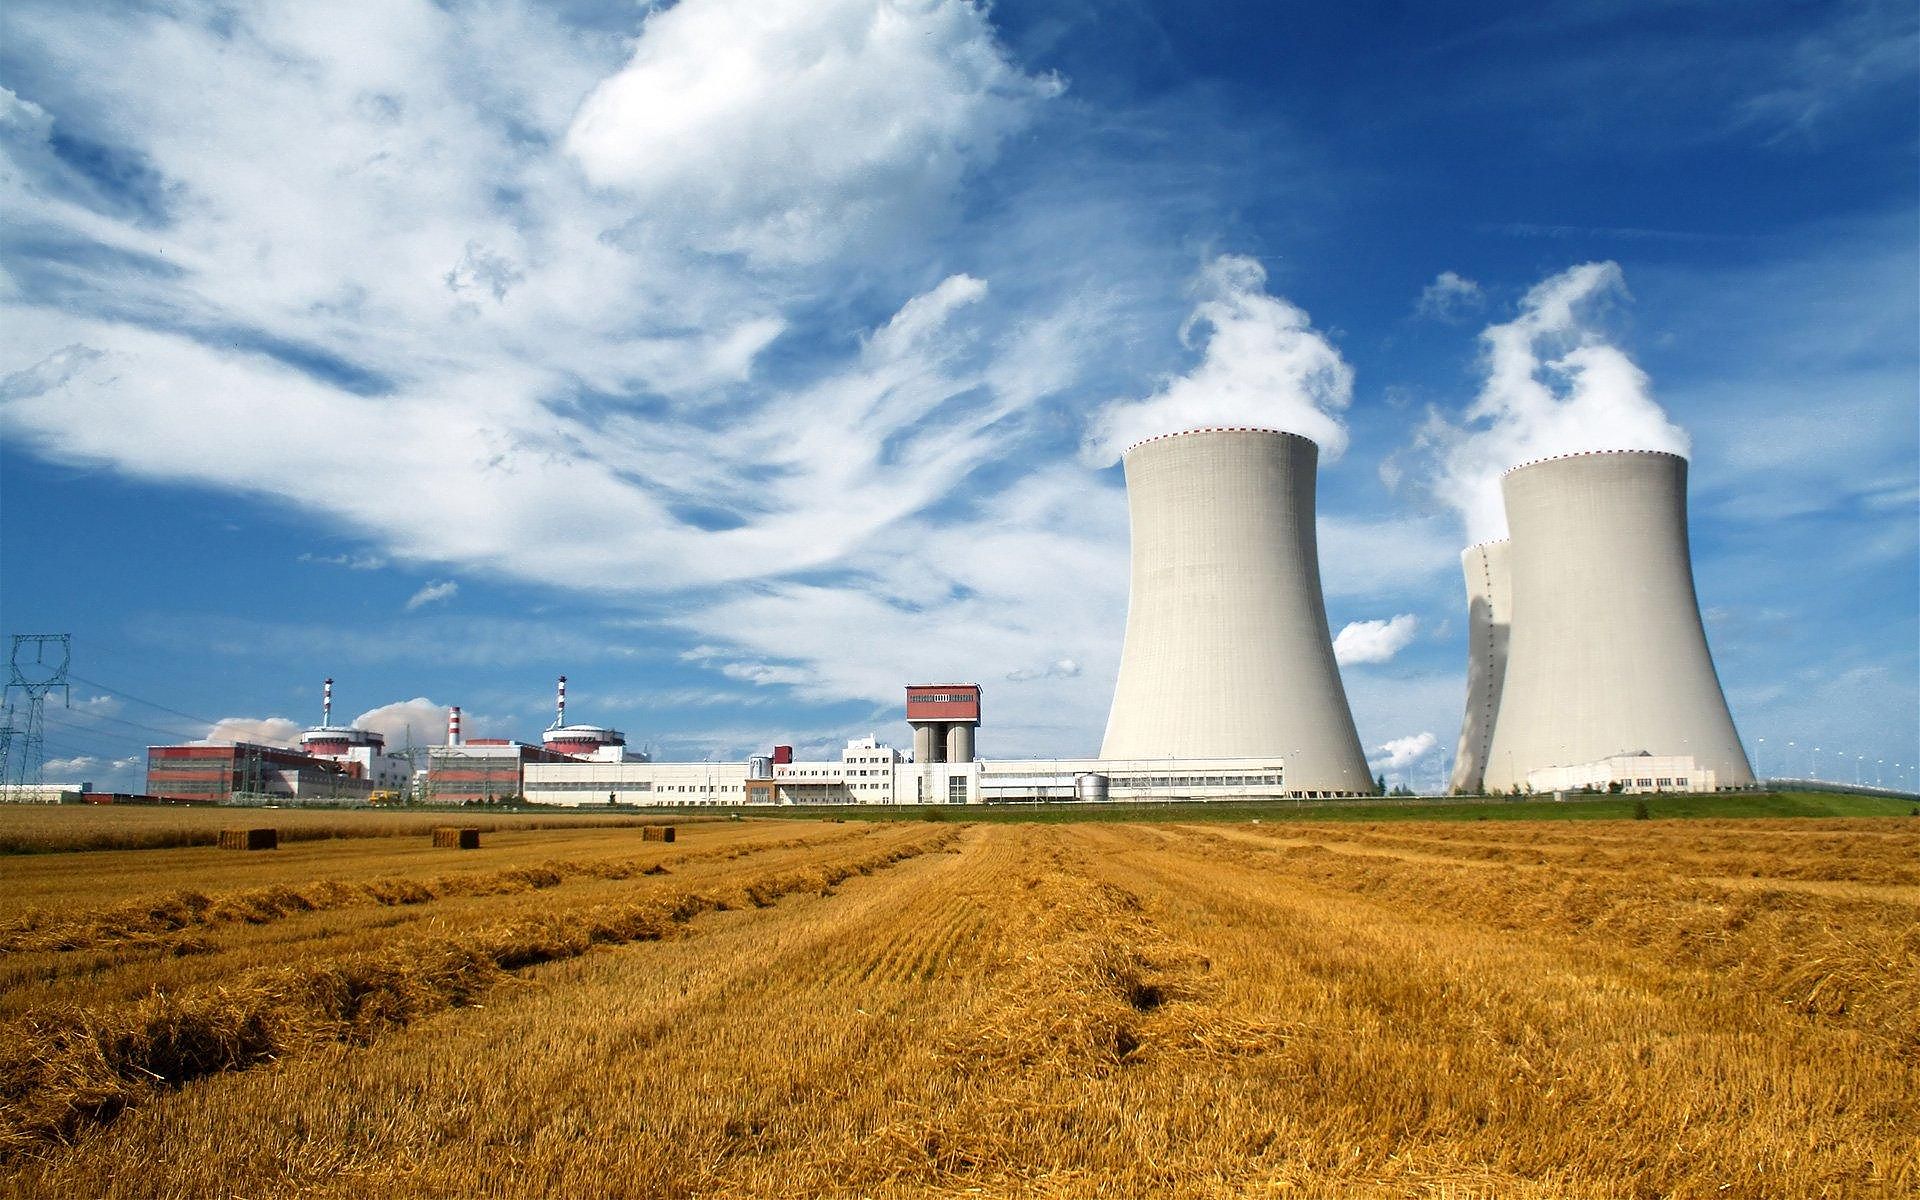 Проектирование зданий и сооружений гражданского и промышленного назначения, в том числе на особо опасных, технически сложных и уникальных объектах использования атомной энергии